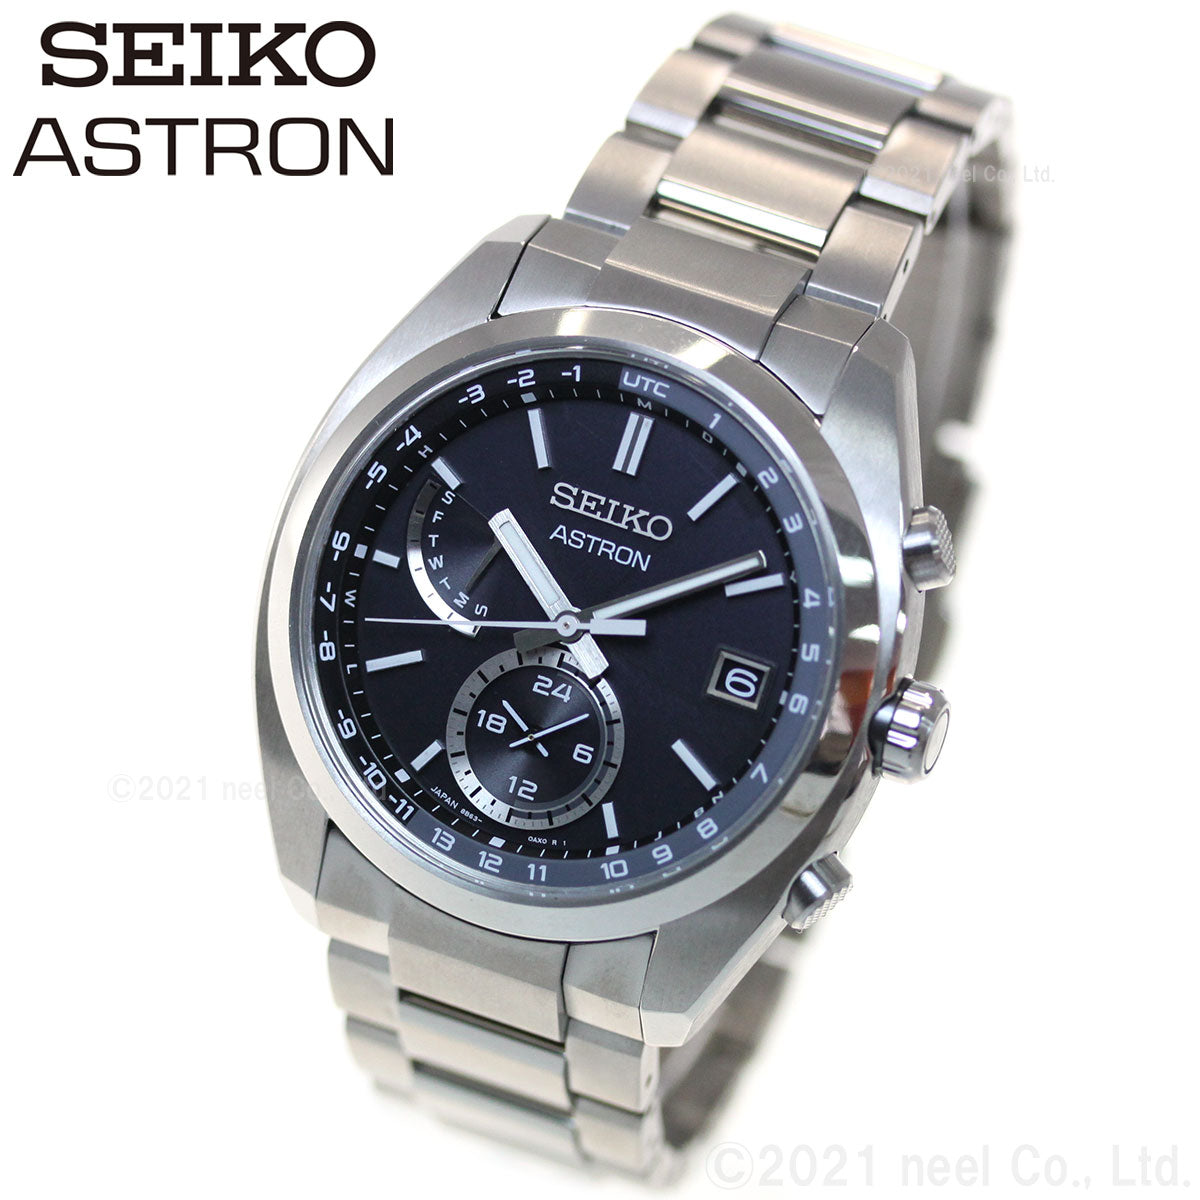 セイコー アストロン 腕時計 メンズ SEIKO ASTRON 電波ソーラー 